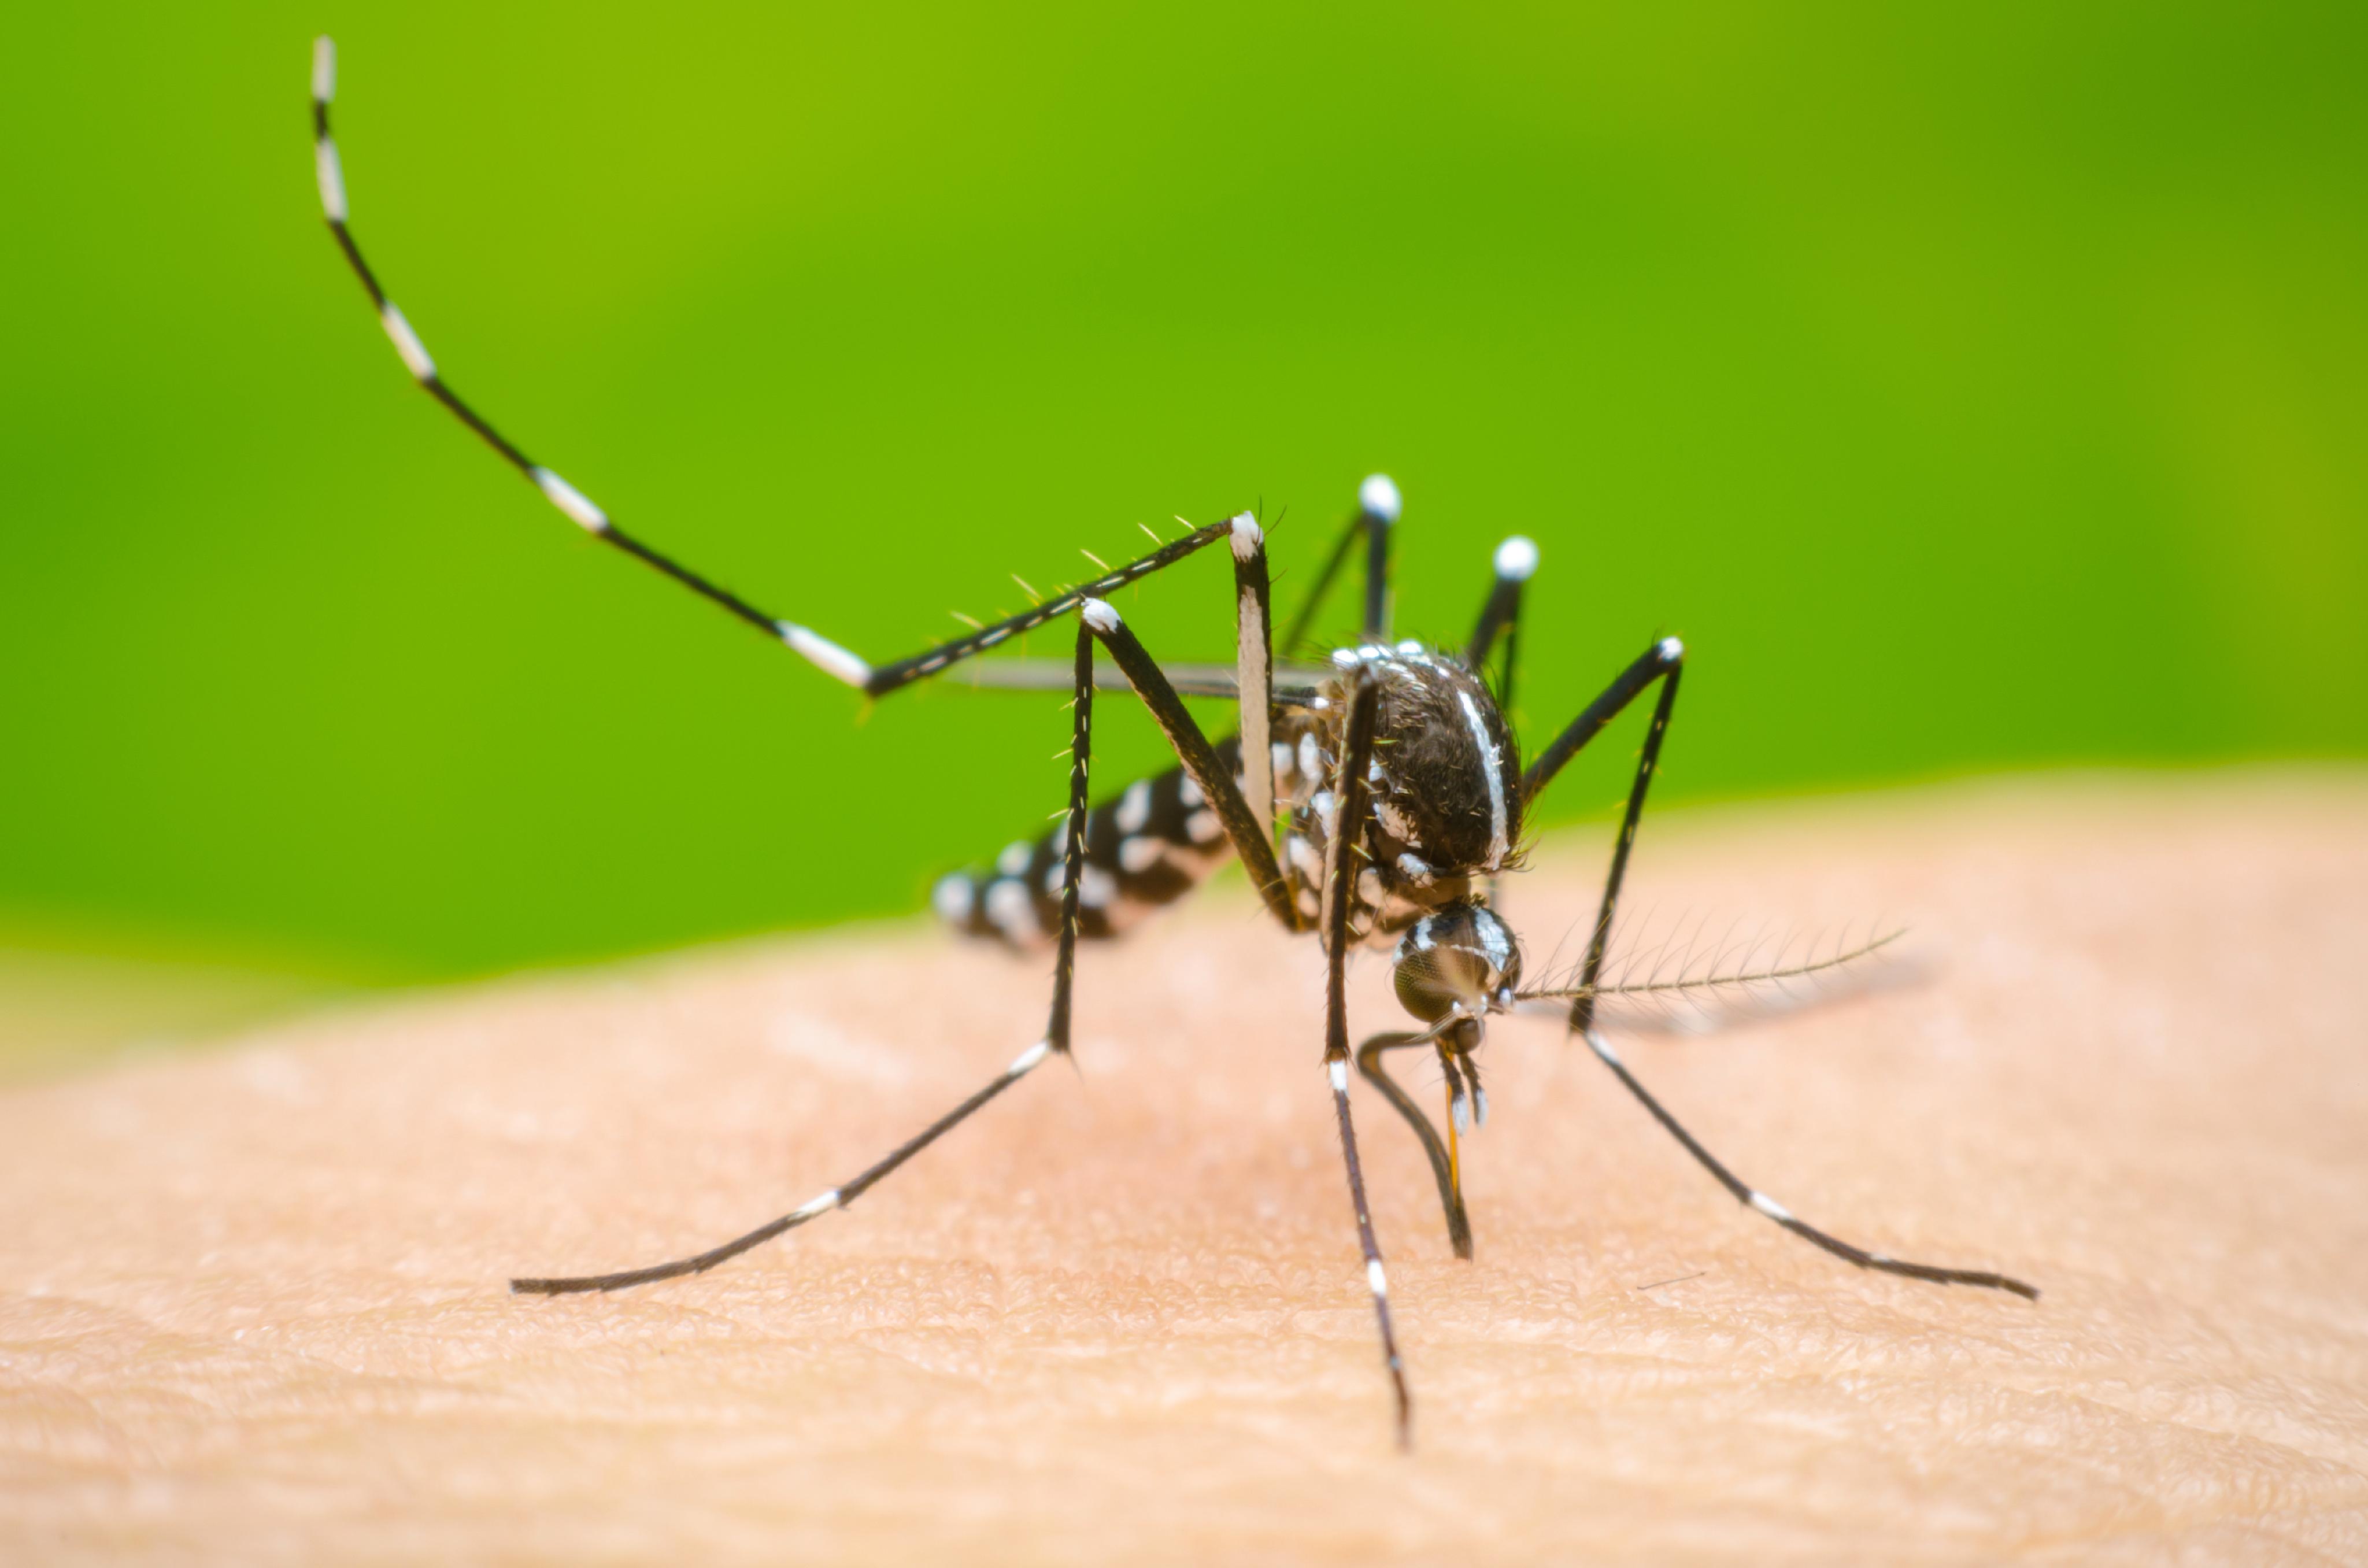 Se reportan fallecidos por dengue en Guatemala (síntomas y cómo prevenirlo)